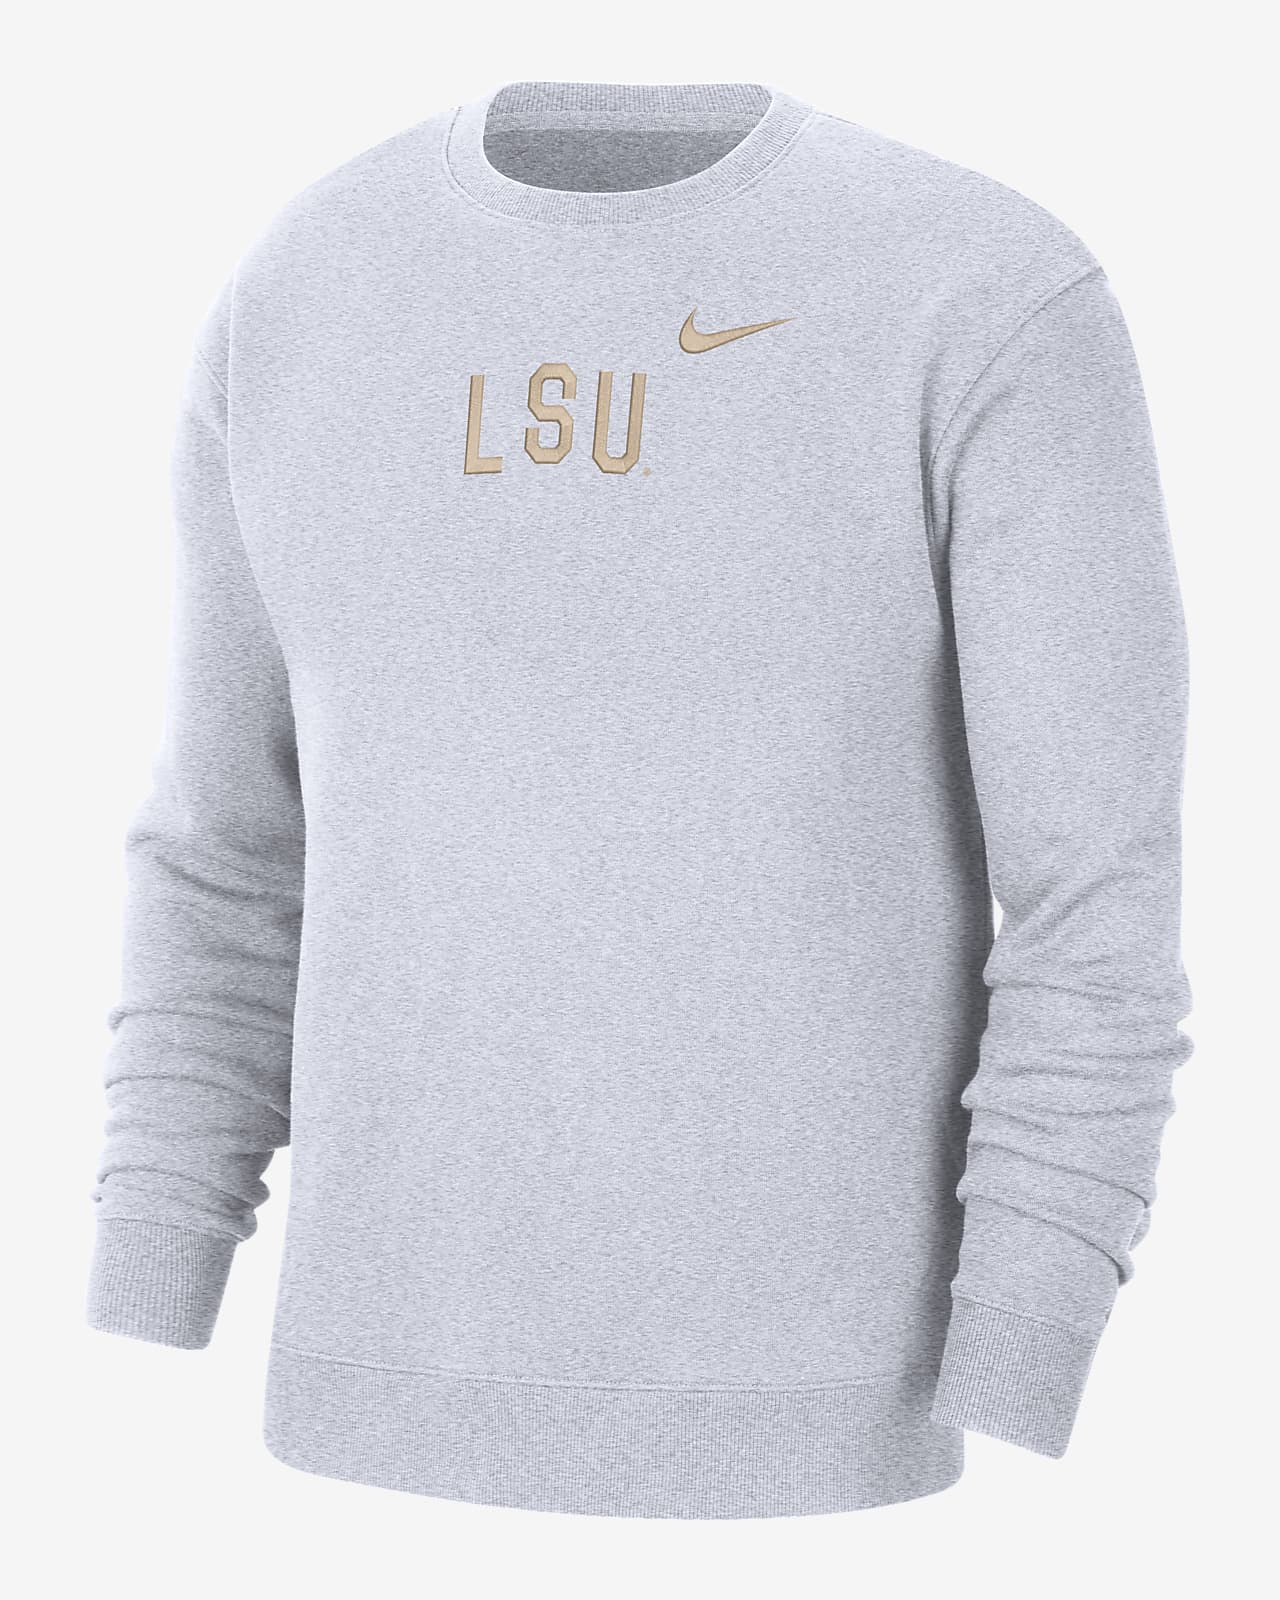 LSU Men's Nike College Crew-Neck Sweatshirt